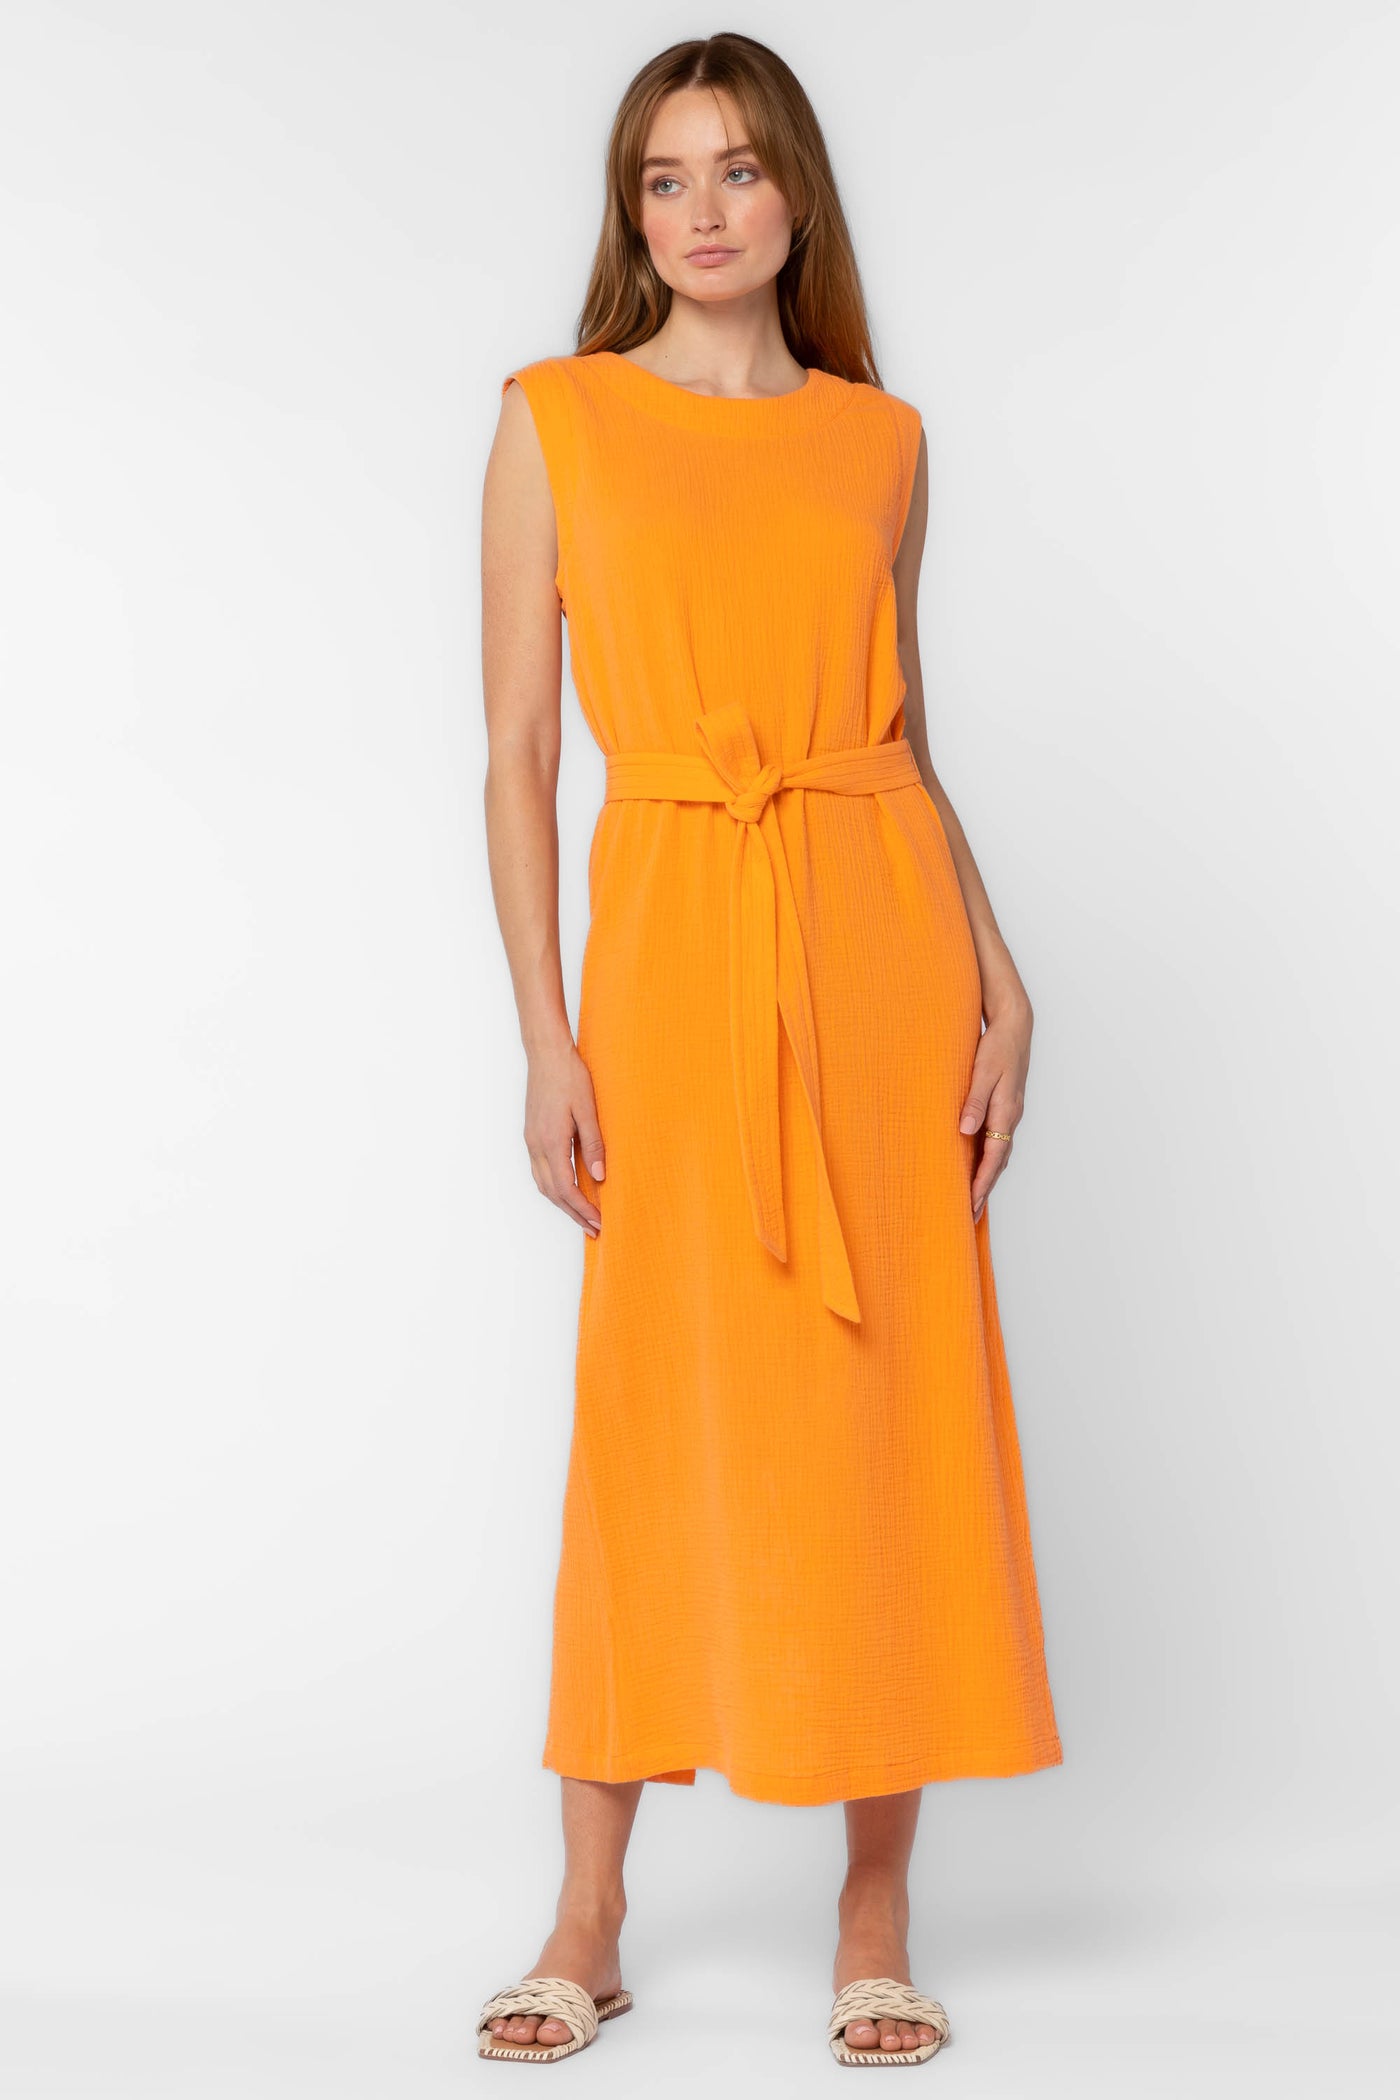 Aurelie Orange Dress - Dresses - Velvet Heart Clothing